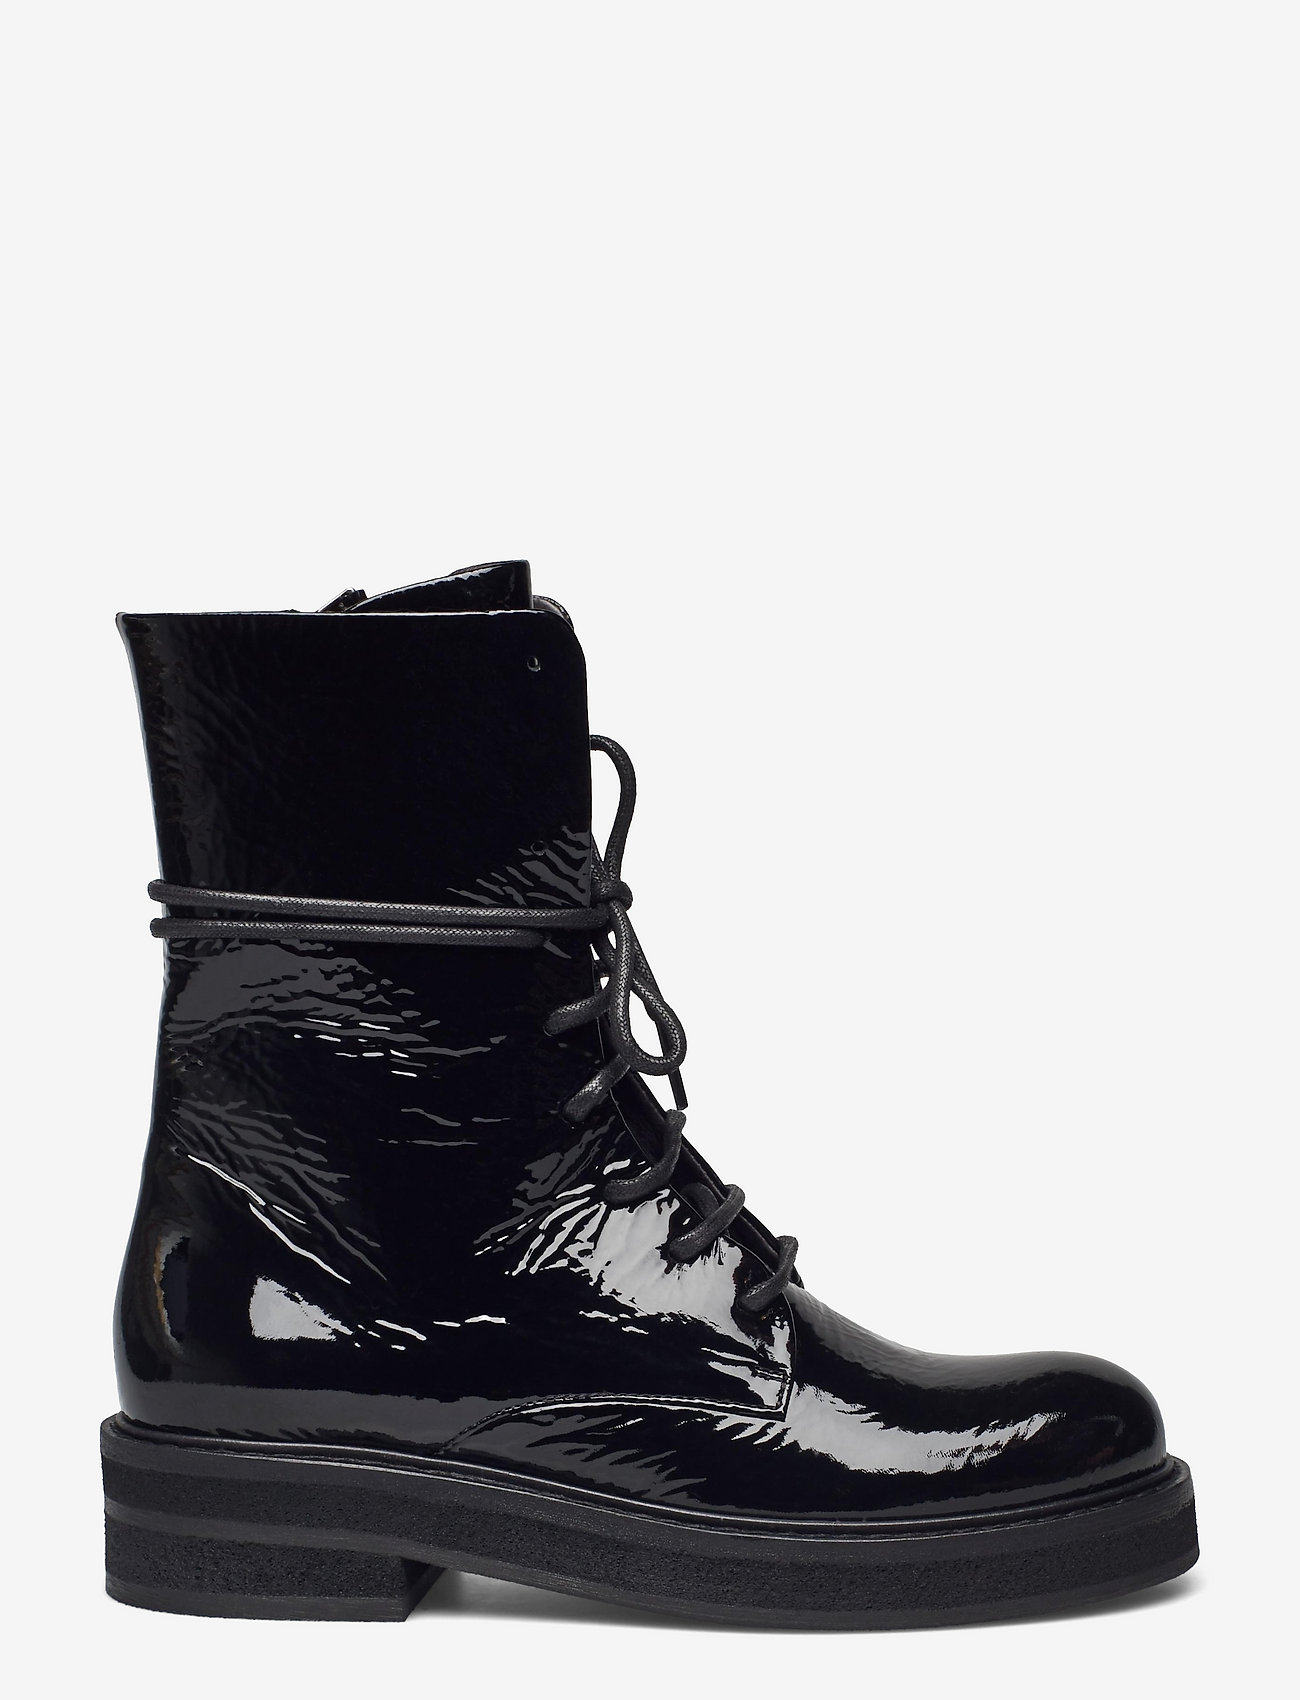 Billi Bi Boots - Ankle boots | Boozt.com